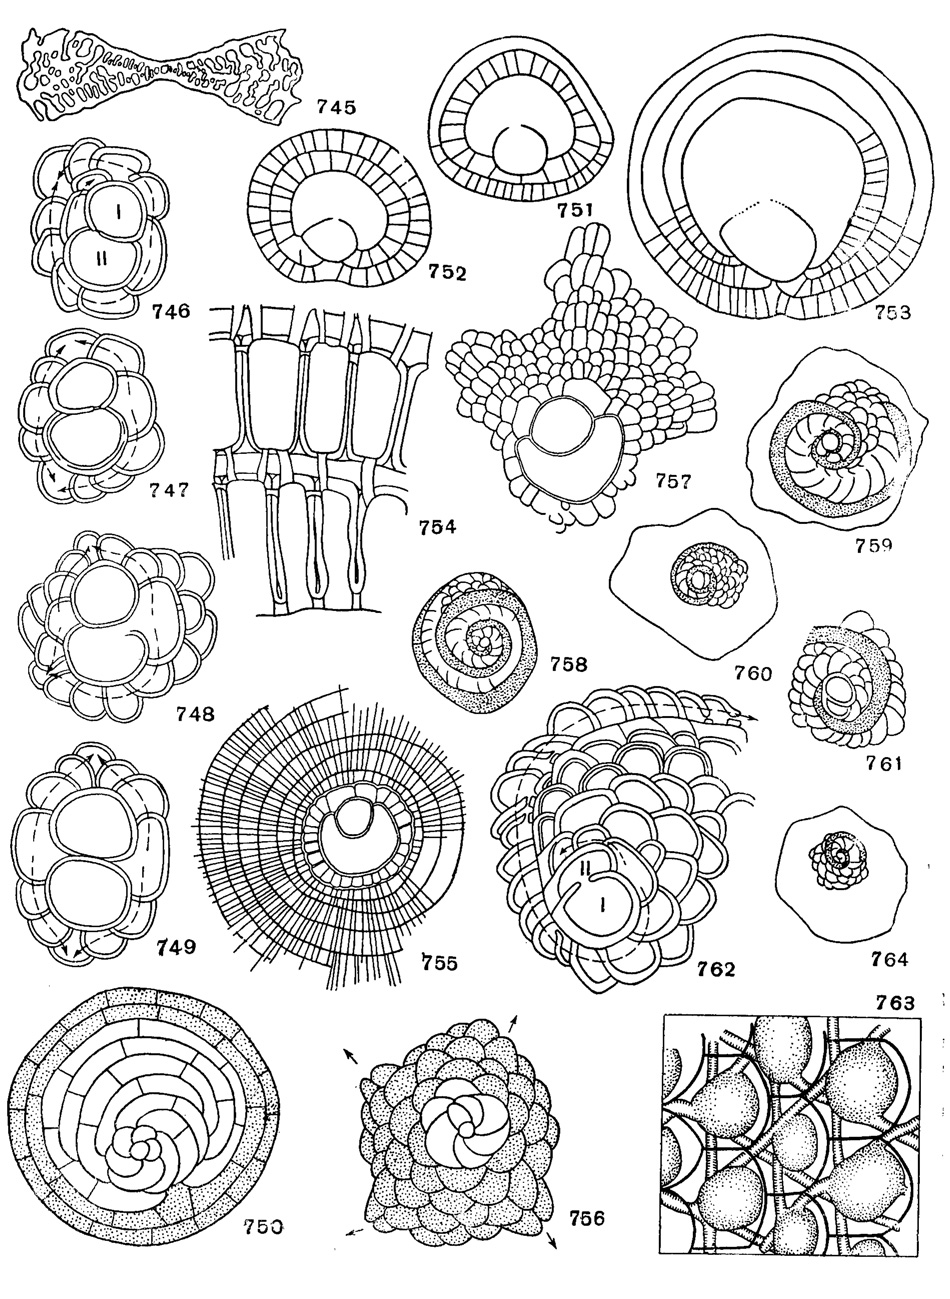 Рис. 745-764. Сем. Orbitoididae, Discocyclinidae, Lepidocyclinidae: 745. Omphalocyclus macroporus (Lamarck); вертикальный разрез, X 8, Маастрихт, Франция (Cushman, 1948). 746. Orbitocyclinoides scheticki BrOnnimann; с трехспиральным непионтом, X 90, верхний мел, Иран (Bronnimann, 1944). 747. Оrbitocyclinoides schenckl Bronnimann; с асимметричным четырехспиральным непионтом, Х 90, верхний мел, Иран (Bronnimann, 1944). 748. Orbitocyclinoides schencki Bronnimann, с асимметричным четырехспиральным непионтом, Х 90, верхний мел, Иран (BrGnnimann, 1944). 749. Orbltocyclinoides schencki Bronnimann; с симметричным четырехспиральиым непионтом, Х 90, верхний мел, Иран (Bronnimann, 1944). 750. Discocyclina раругасеа (Boube); форма В, в центре - начальная камера, незаштрихованные камеры - непионические, камеры с точками - неанические (Bronnimann, 1946). 751-752. Discocyclina angusiae van der Weijden; расположение периэмбриональных камер (Renz u. Kupper, 1946). 753. Discocyclina aff. varians (Kaufmann) (Renz u. Kupper, 1946). 754. Discocyclina striati-emanuelis Br6nnimann; разрез экваториальных камер по плоскости симметрии, в стенках камер видны 'темные линии' и столоны, х 300 (приблизительно); эоцен, Крессенберг. 755. Aciinocyclina radians (Archiac); Х 40, эоцен, Верона (Bronnimann, 1946). 756. Asterocyclina stellaris ((Brunner); форма В, четырехлучевой экземпляр в центре - начальная камера; незаштрихованные камеры - непионические; камеры с точечками - неанические (Brflnnimann, 1946). 757. Asterocyclina stellaris (Brunner); форма A; X 40, В. эоцен Марокко (BrOnnimann, 1946). 758. Helicostegina gyralis Barker et Grimsdale; схематическое строение спиральных камер (Bronnimann, 1944). 759. Helicostegina dimorpha Barker et Grimsdale; схематическое строение спиральных камер (BrOnnimann, 1944). 760 Helicolepidina paucispira Barker et Grimsdale; схематическое строение спиральных камер (Bronnimann, 1944). 761. Helicolepidina polygyralis Barker; схематическое строение спиральных камер (Bronnimann, 1944). 762. Helicolepidina spiralis Tobler; двухспиральный непионт с главной спиралью, начиная с центра, Х 80, Венесуэла (Bronnimann, 1944). 763. Lepidocyclina (Eulepidina) favosa Cushman; жирные линии - очертания камер (Glaessner, 1948). 764. Eulinderina guyabalensis Barker et Grimsdale; схематическое строение спиральных камер (Bronnimann, 1944)